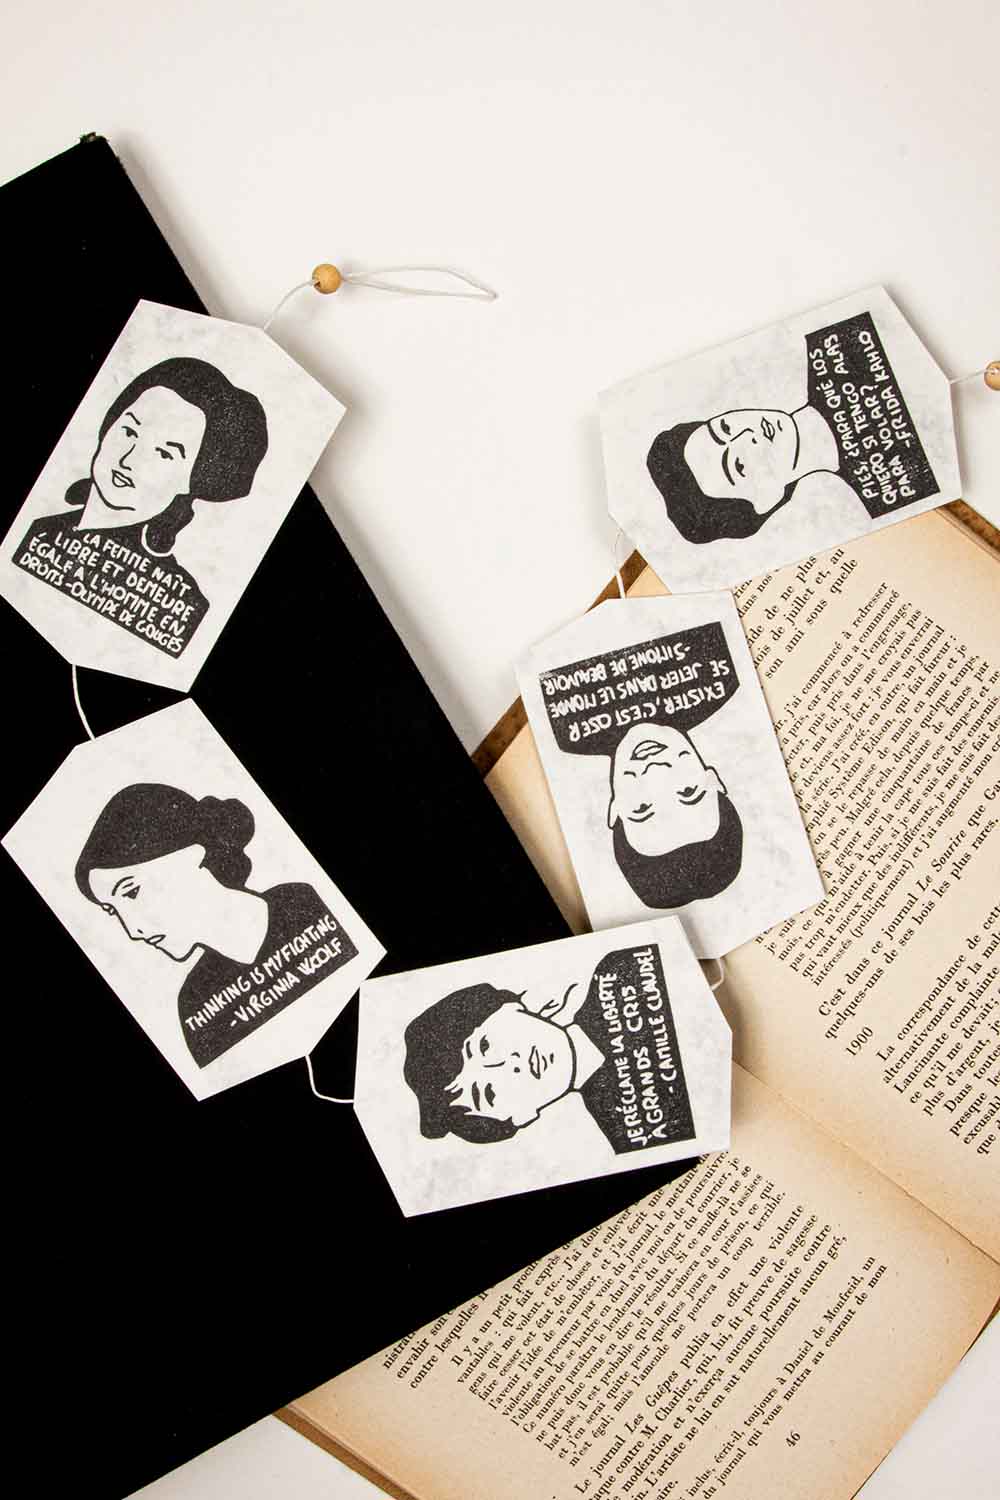 Marcapáginas hechos a mano con retratos de mujeres clásicas de Guirnalda Clásica Mujeres y citas de mujeres famosas, colocados en las páginas de un libro abierto, sobre un fondo blanco de Les Tampons de Roser.